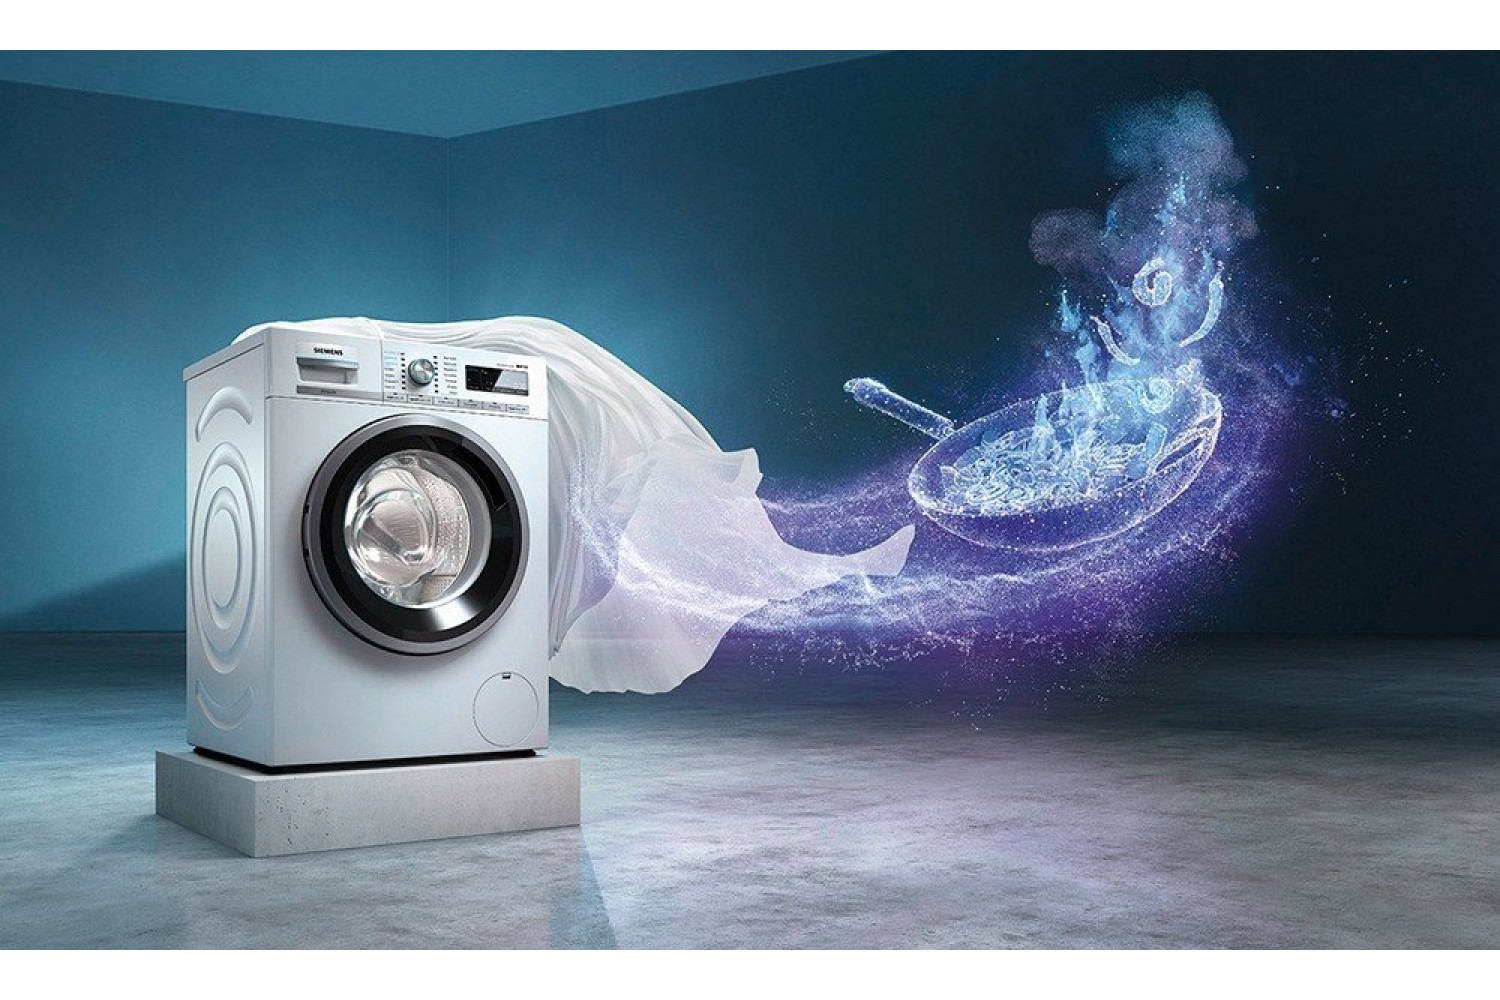 Как выбрать надёжную стиральную машину для дома: разбор основных параметров и производителей